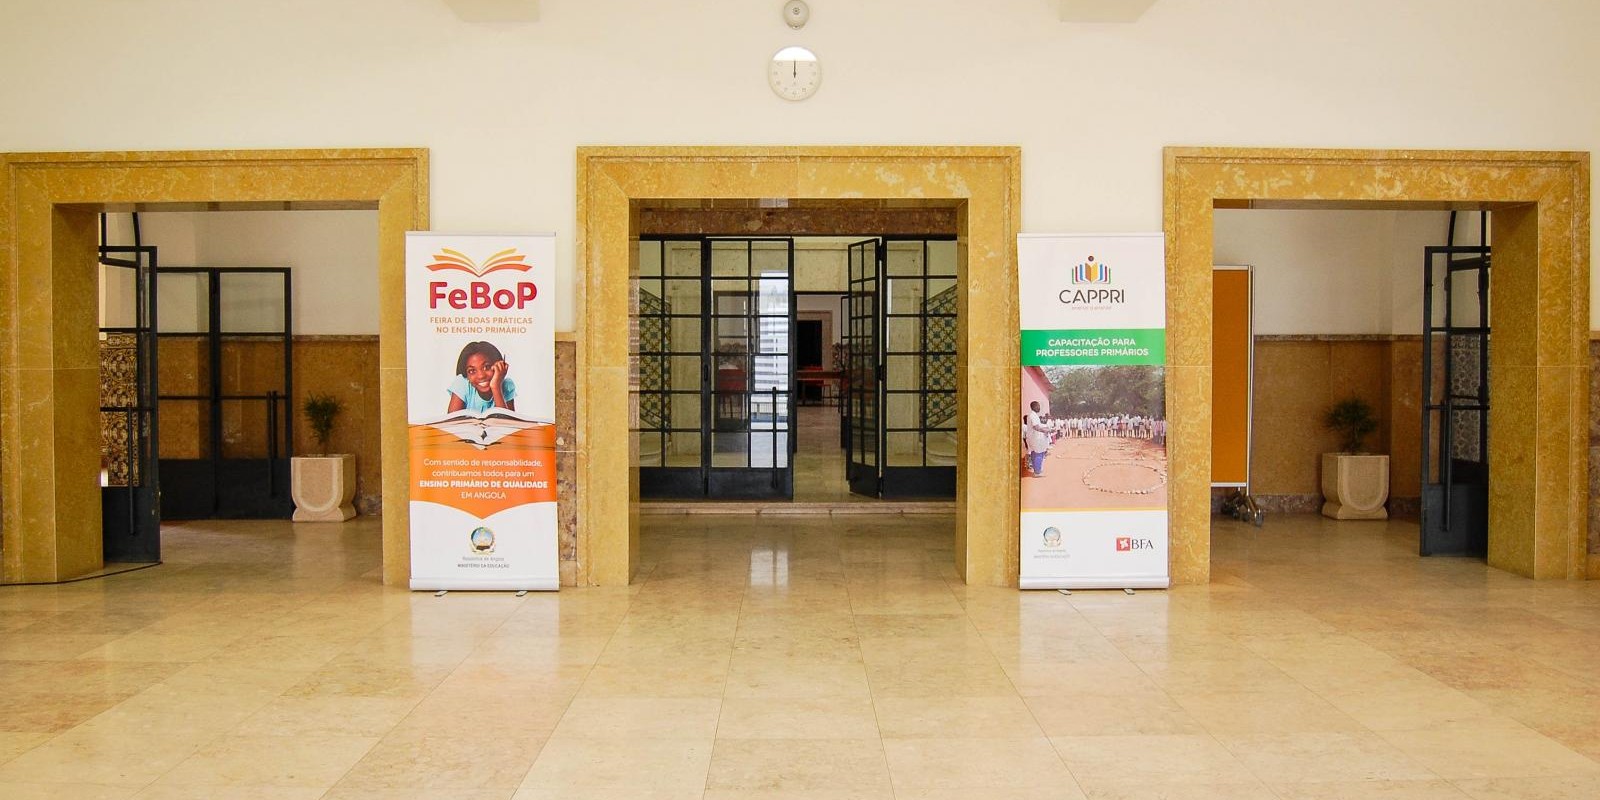 Ministério da Educação Realiza Feira de Boas Práticas “FeBoP” 2019